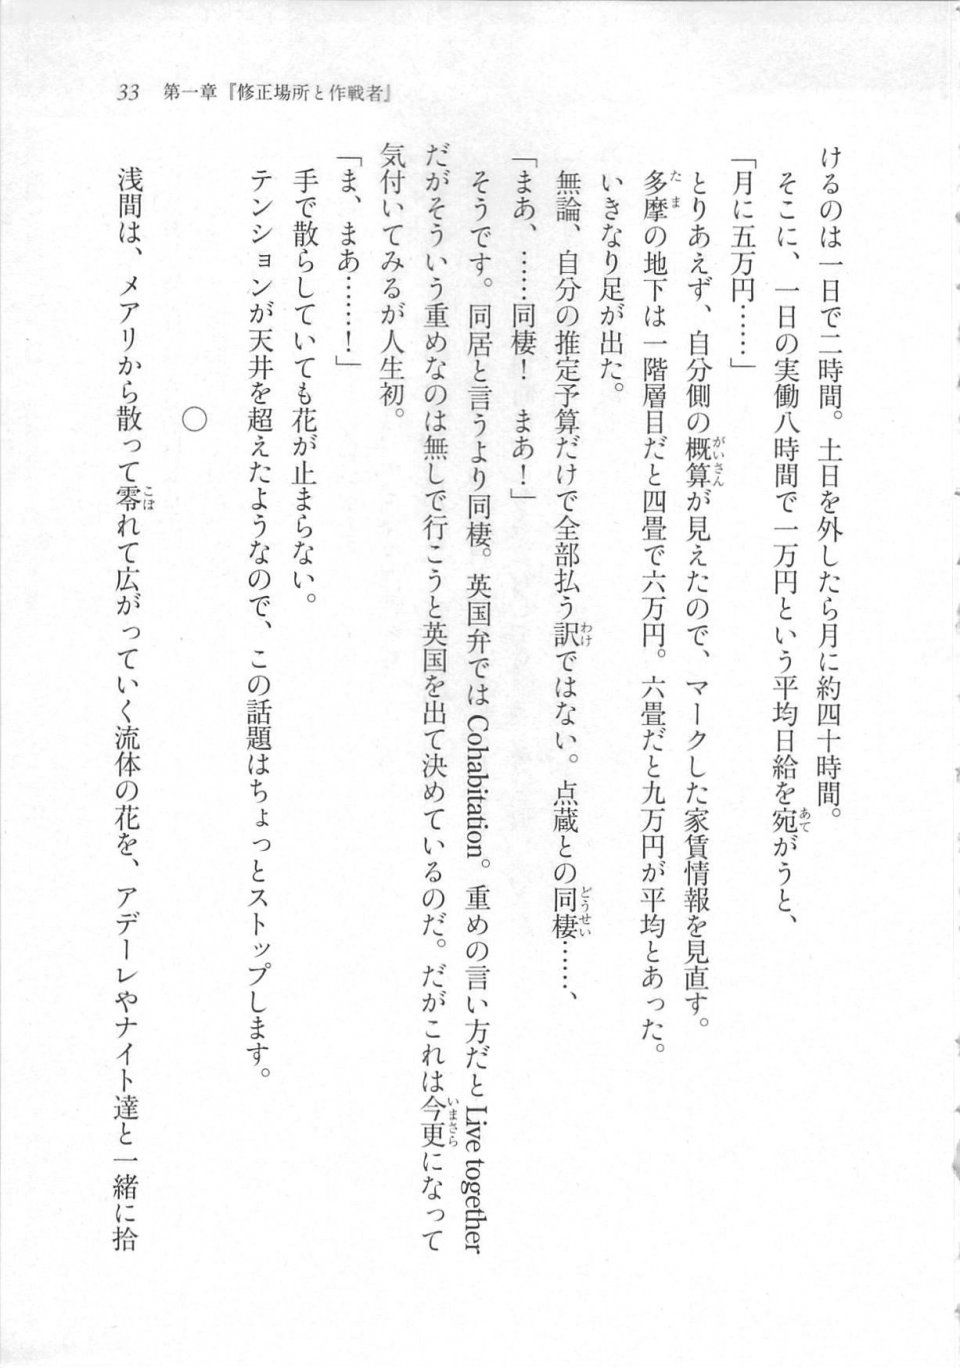 Kyoukai Senjou no Horizon LN Sidestory Vol 3 - Photo #37